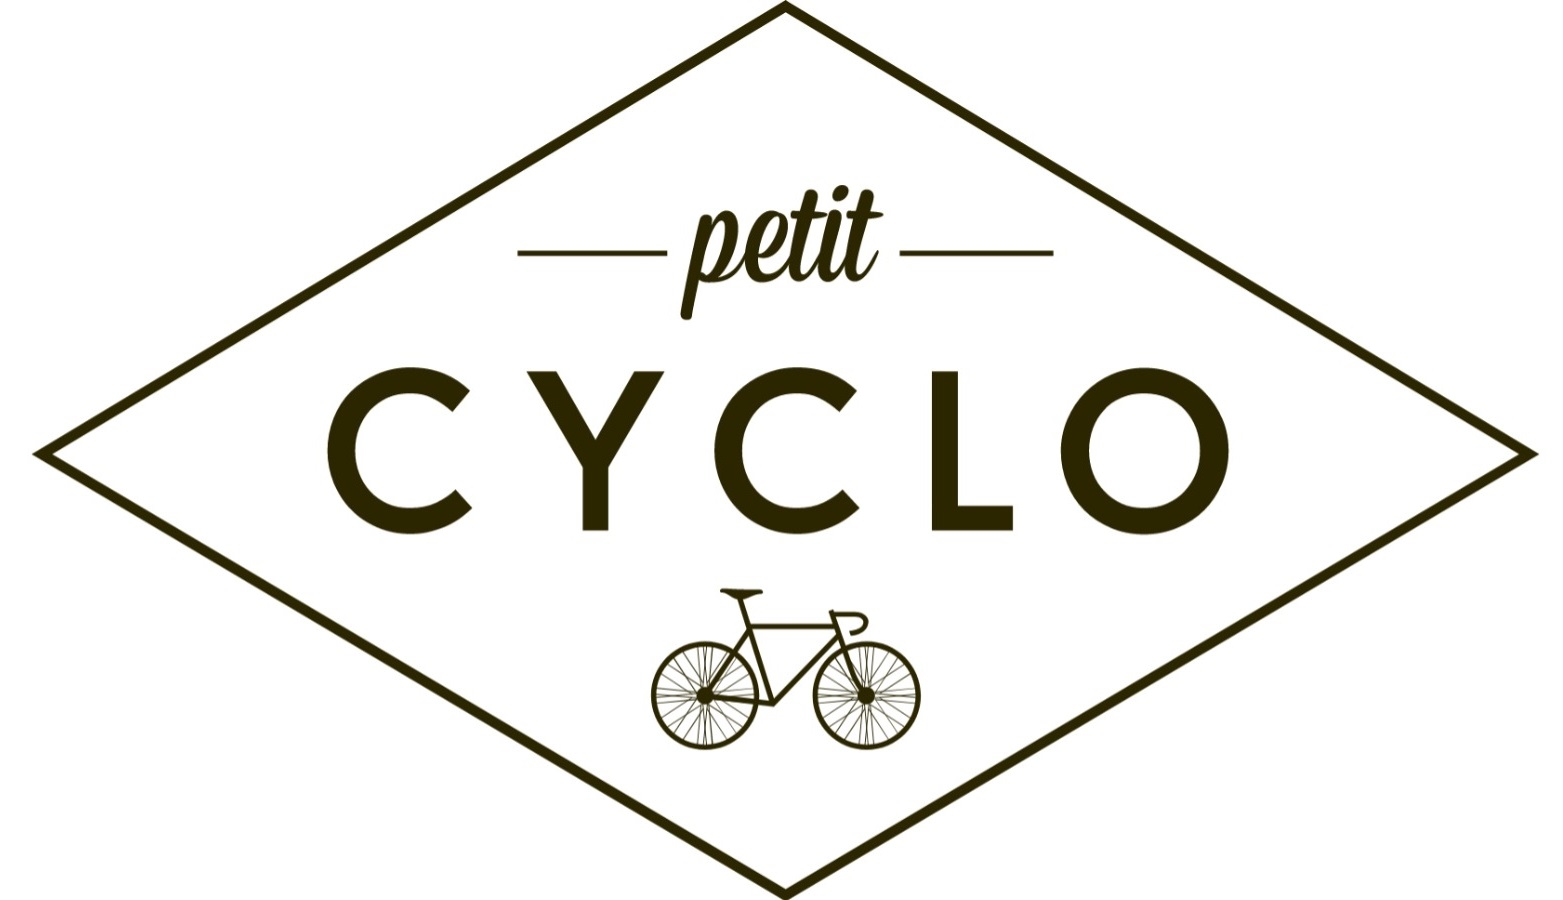 PETIT CYCLO